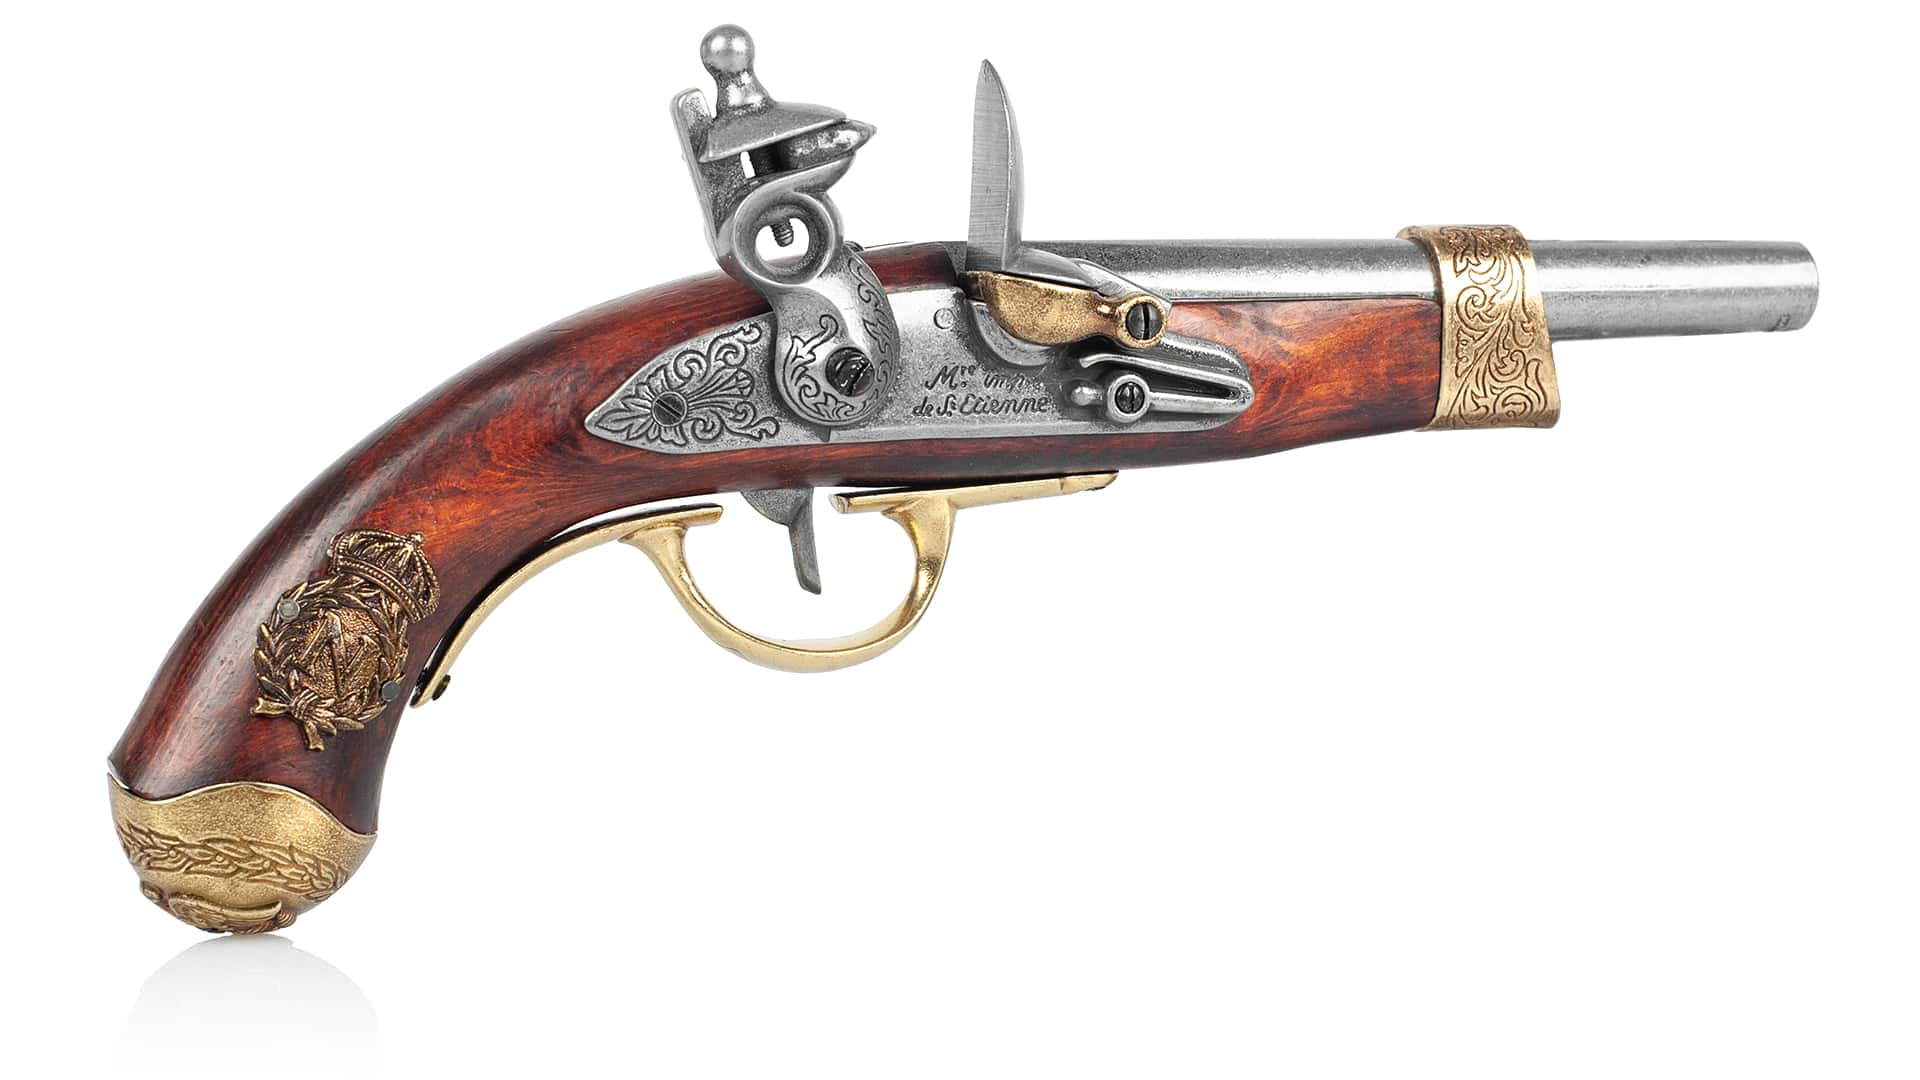 Detailgetreues Dekogewehr mit Bajonett - Frankreich 1806